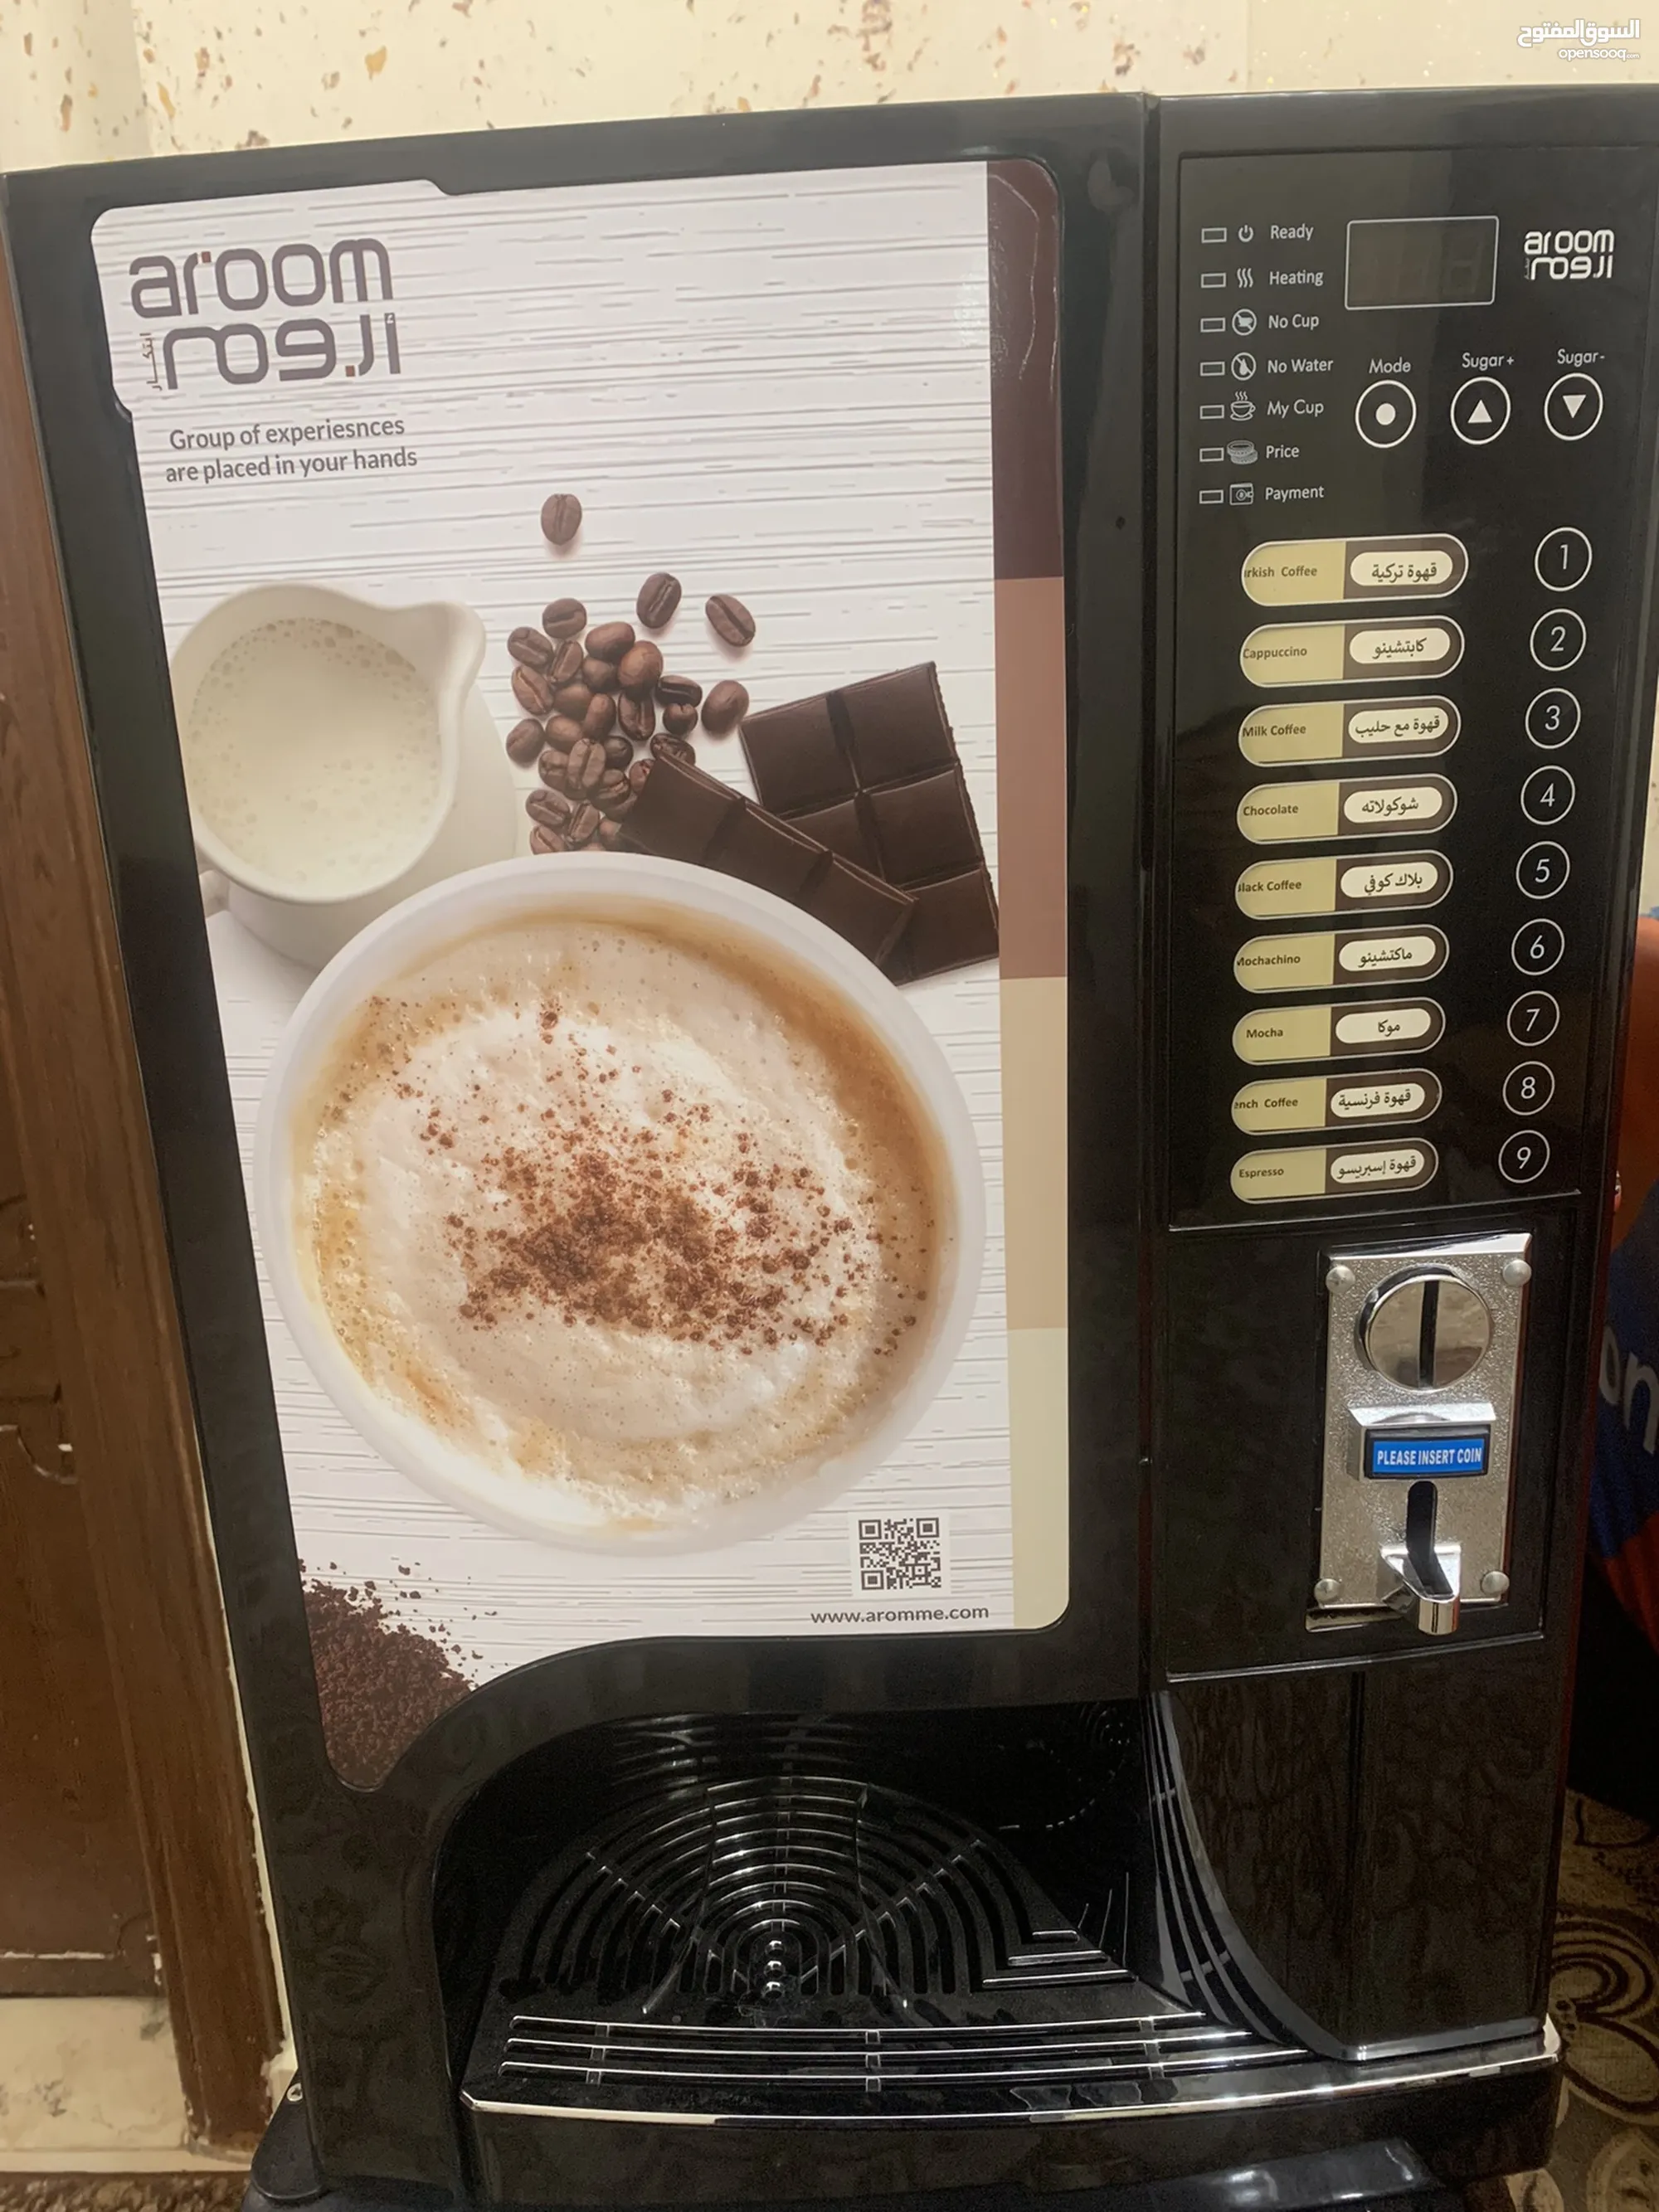 ماكنات صنع قهوة للبيع نوع أروم - (237529602) | السوق المفتوح